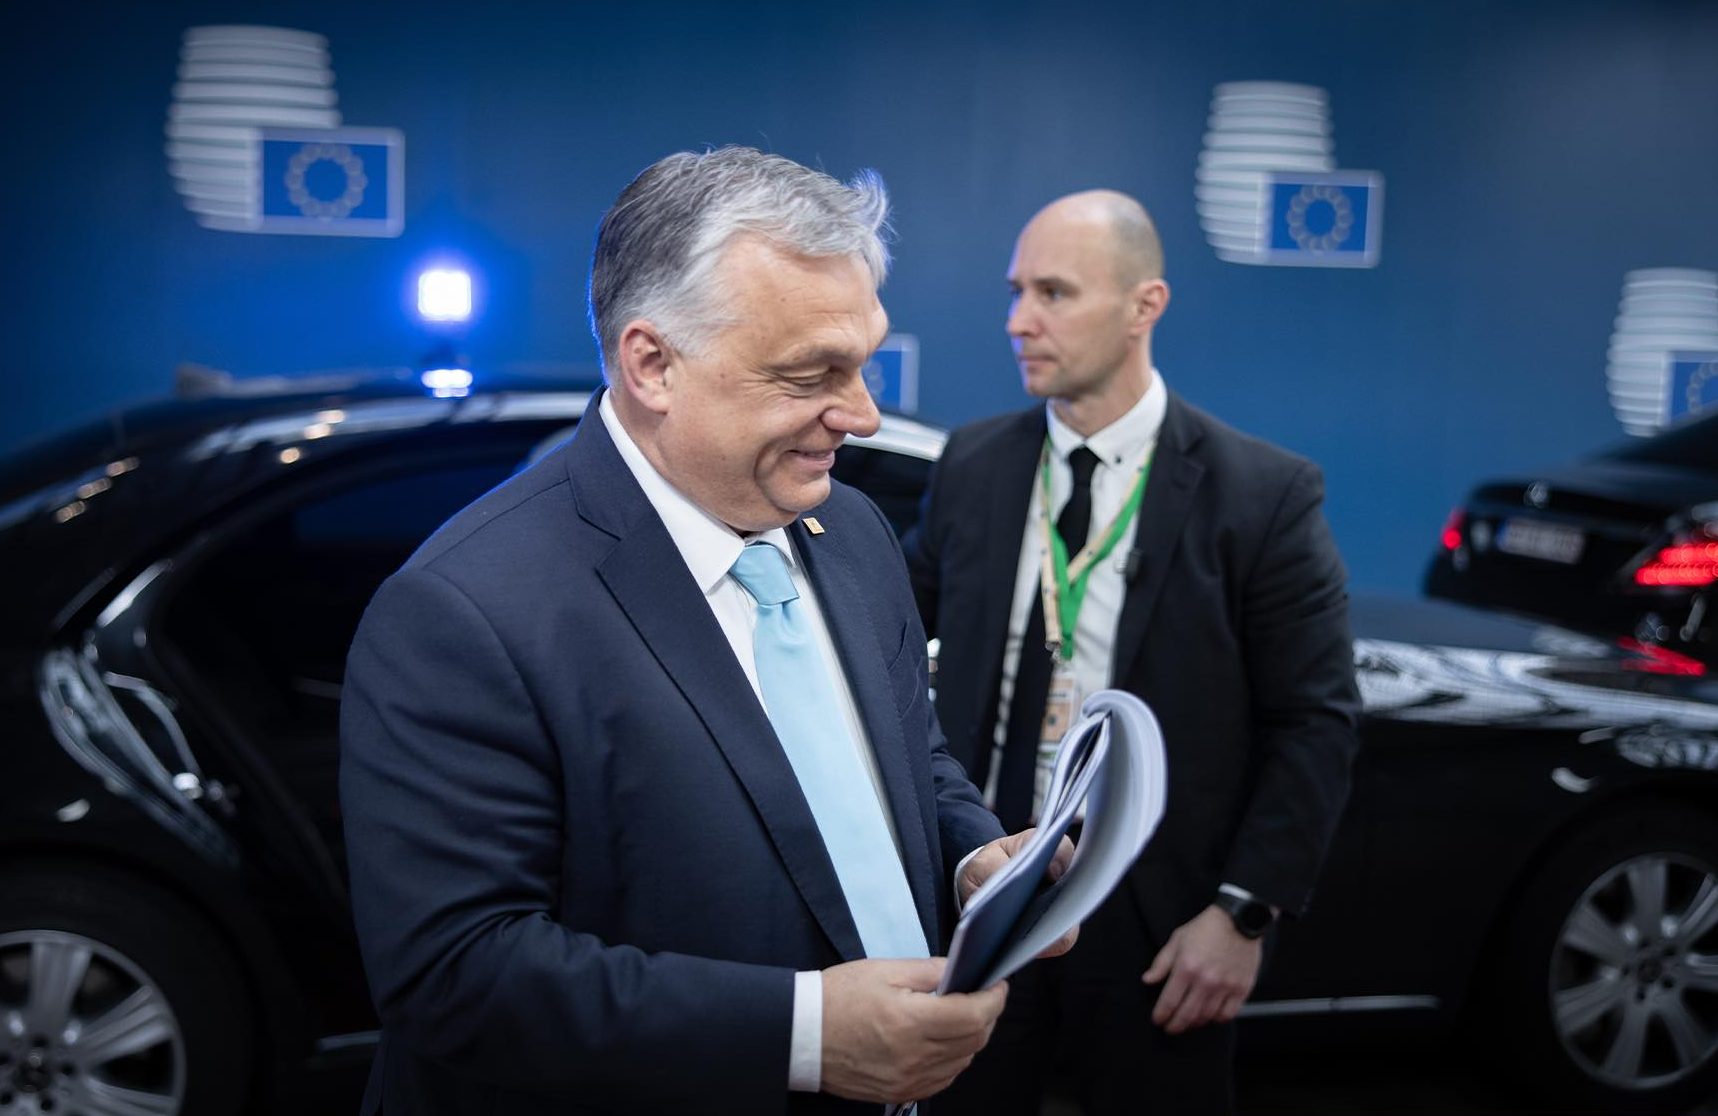 Europas Richtungswechsel könnte Viktor Orbán zu einem Vorbild für die neue Politik machen